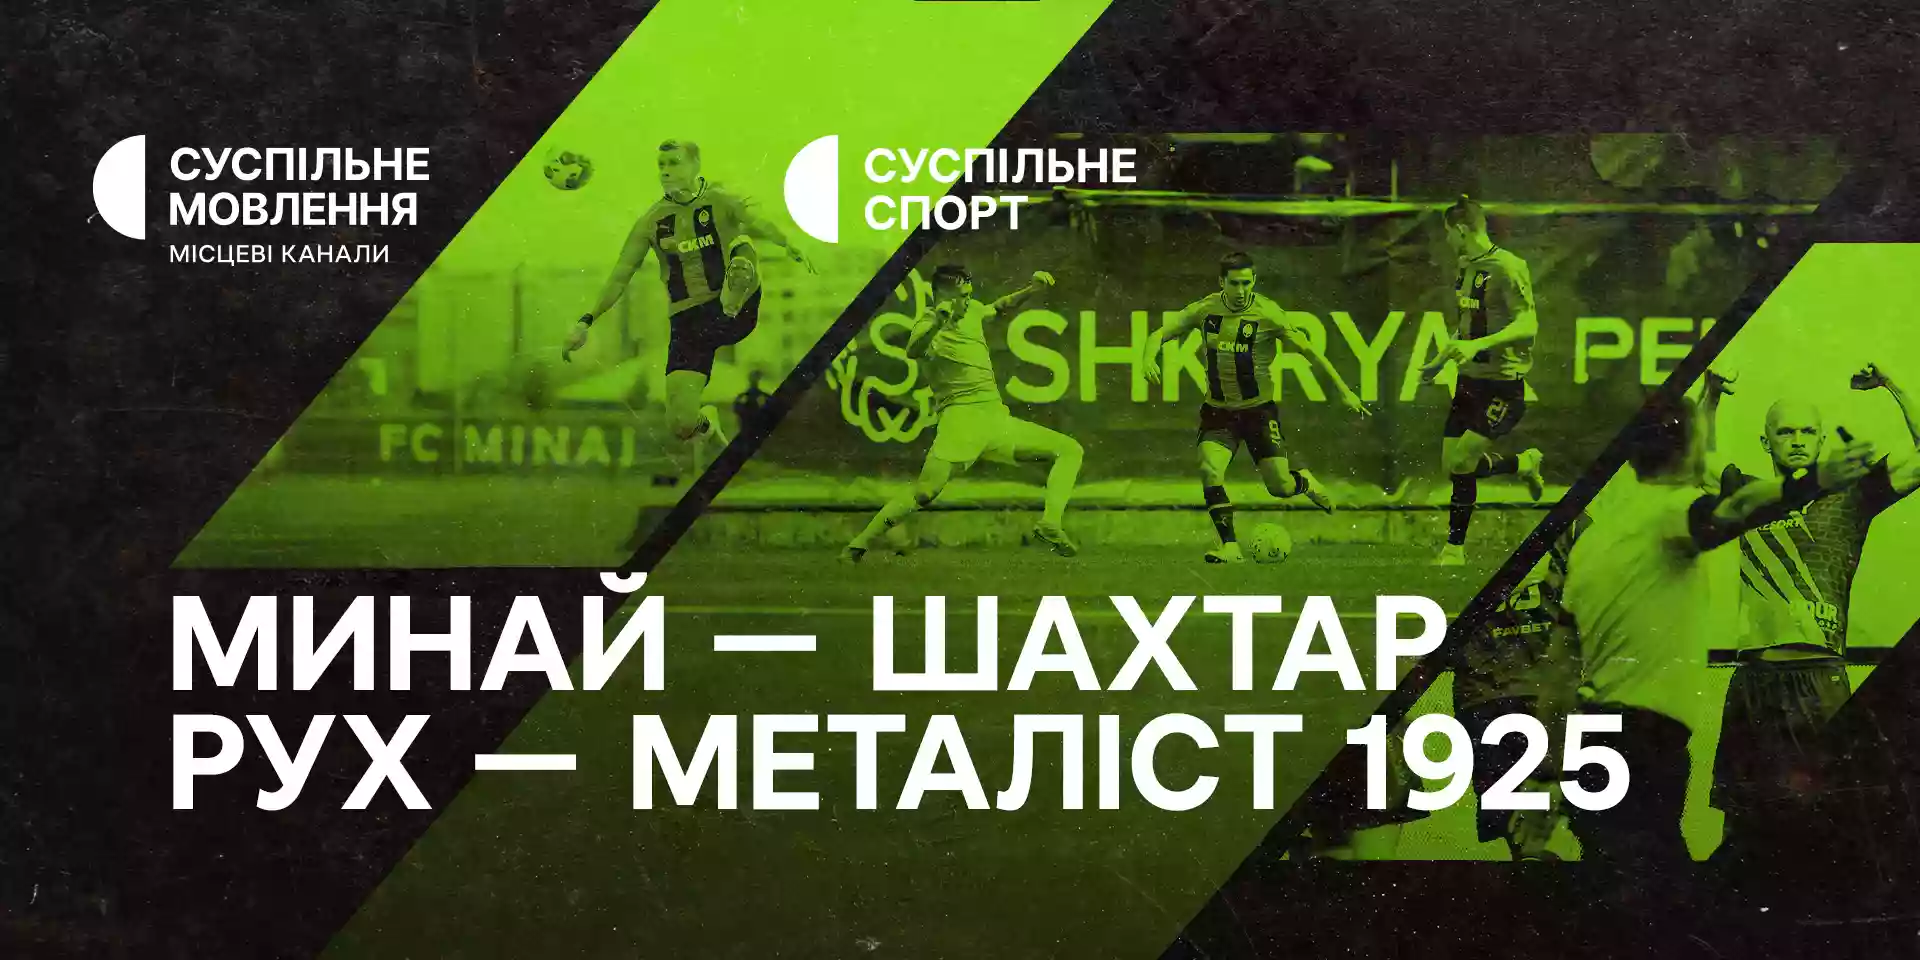 Суспільне транслюватиме матчі шостого туру Української Прем'єр-ліги